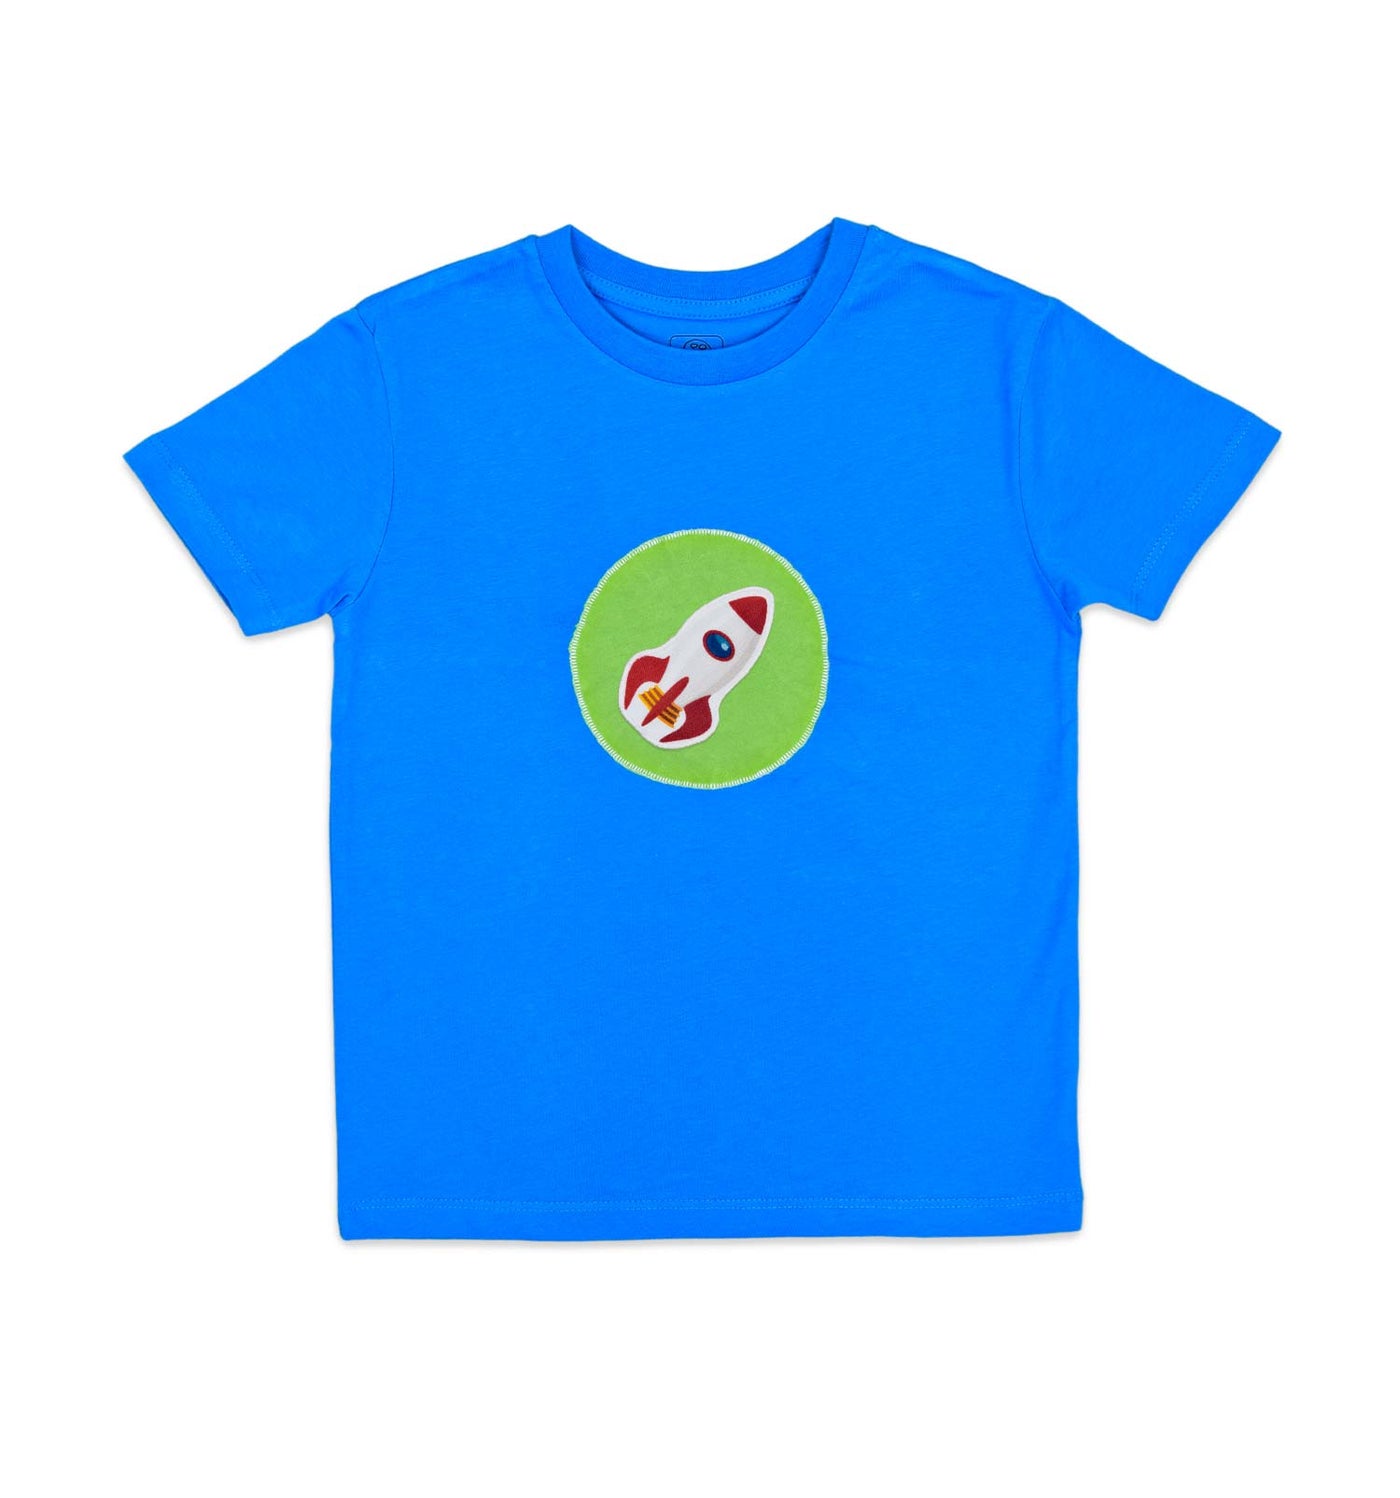 T-Shirt mit grünem Kreis in azur | sticklett Online Store.